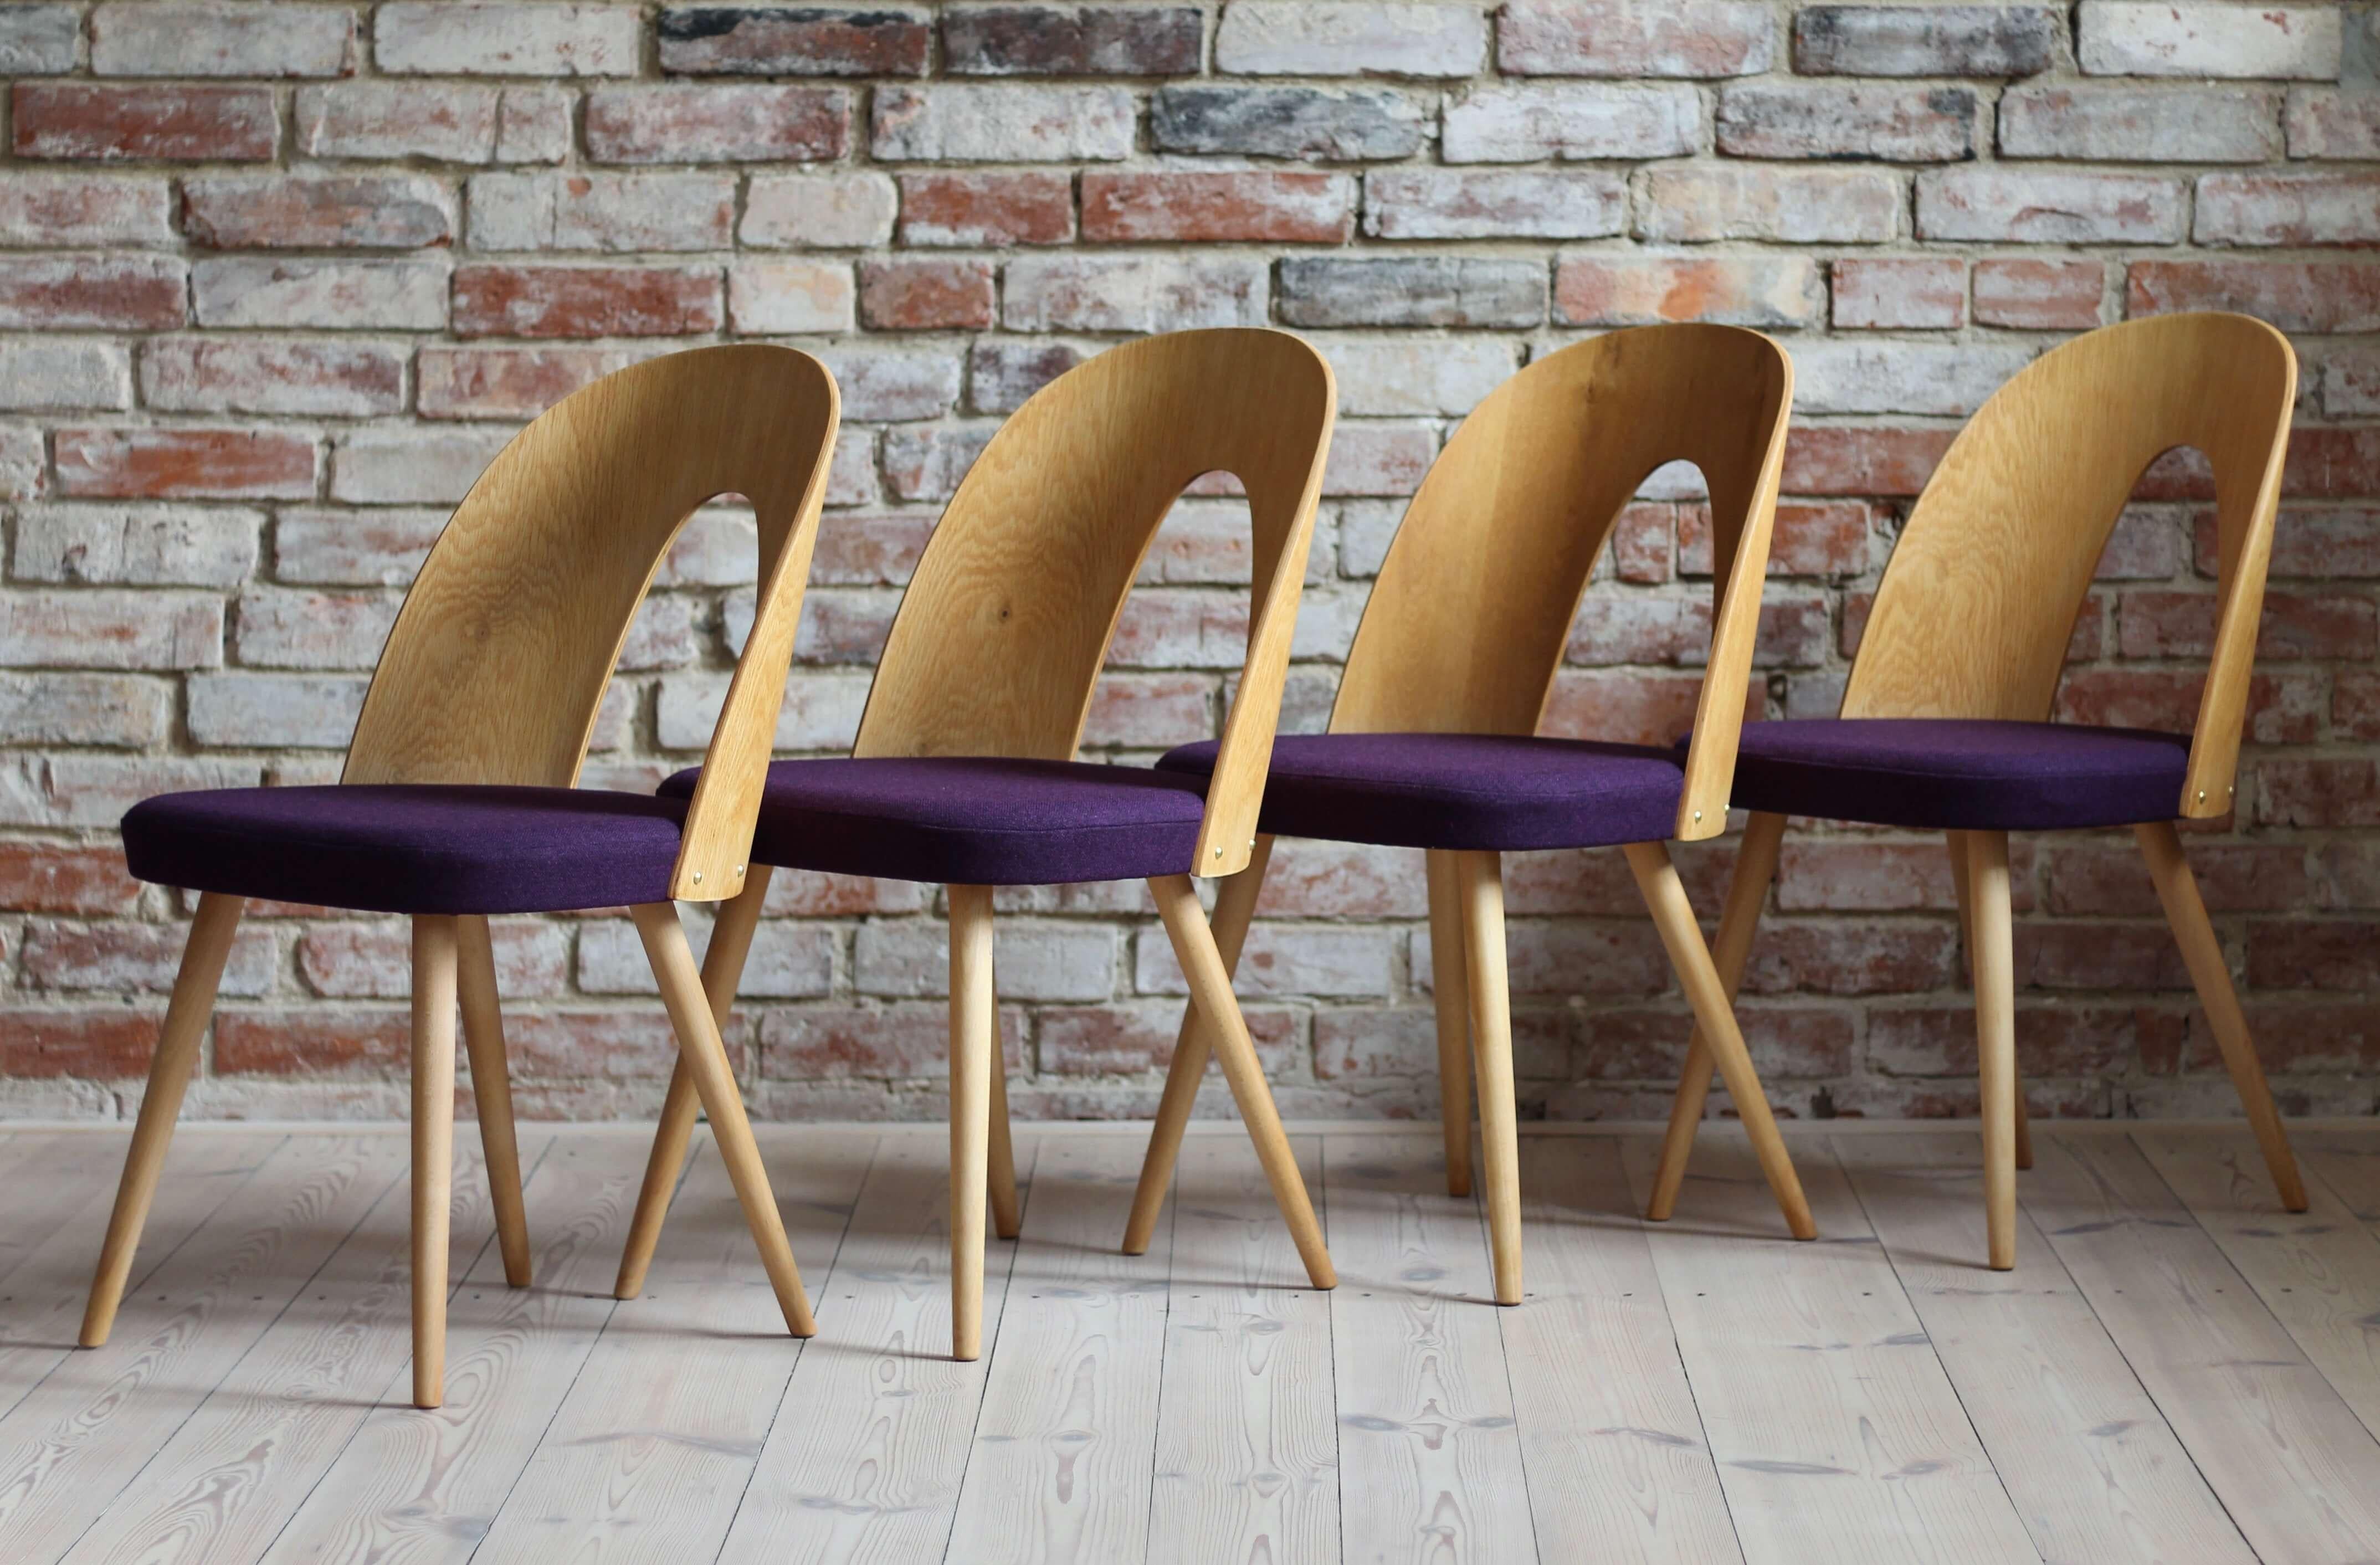 Dieses Set aus vier Vintage-Esszimmerstühlen wurde vom tschechischen Designer Antonin Šuman in den 1960er Jahren entworfen. Die Stühle wurden vollständig restauriert und mit hochwertigem Öl behandelt, das ihnen ein schönes und natürliches Aussehen